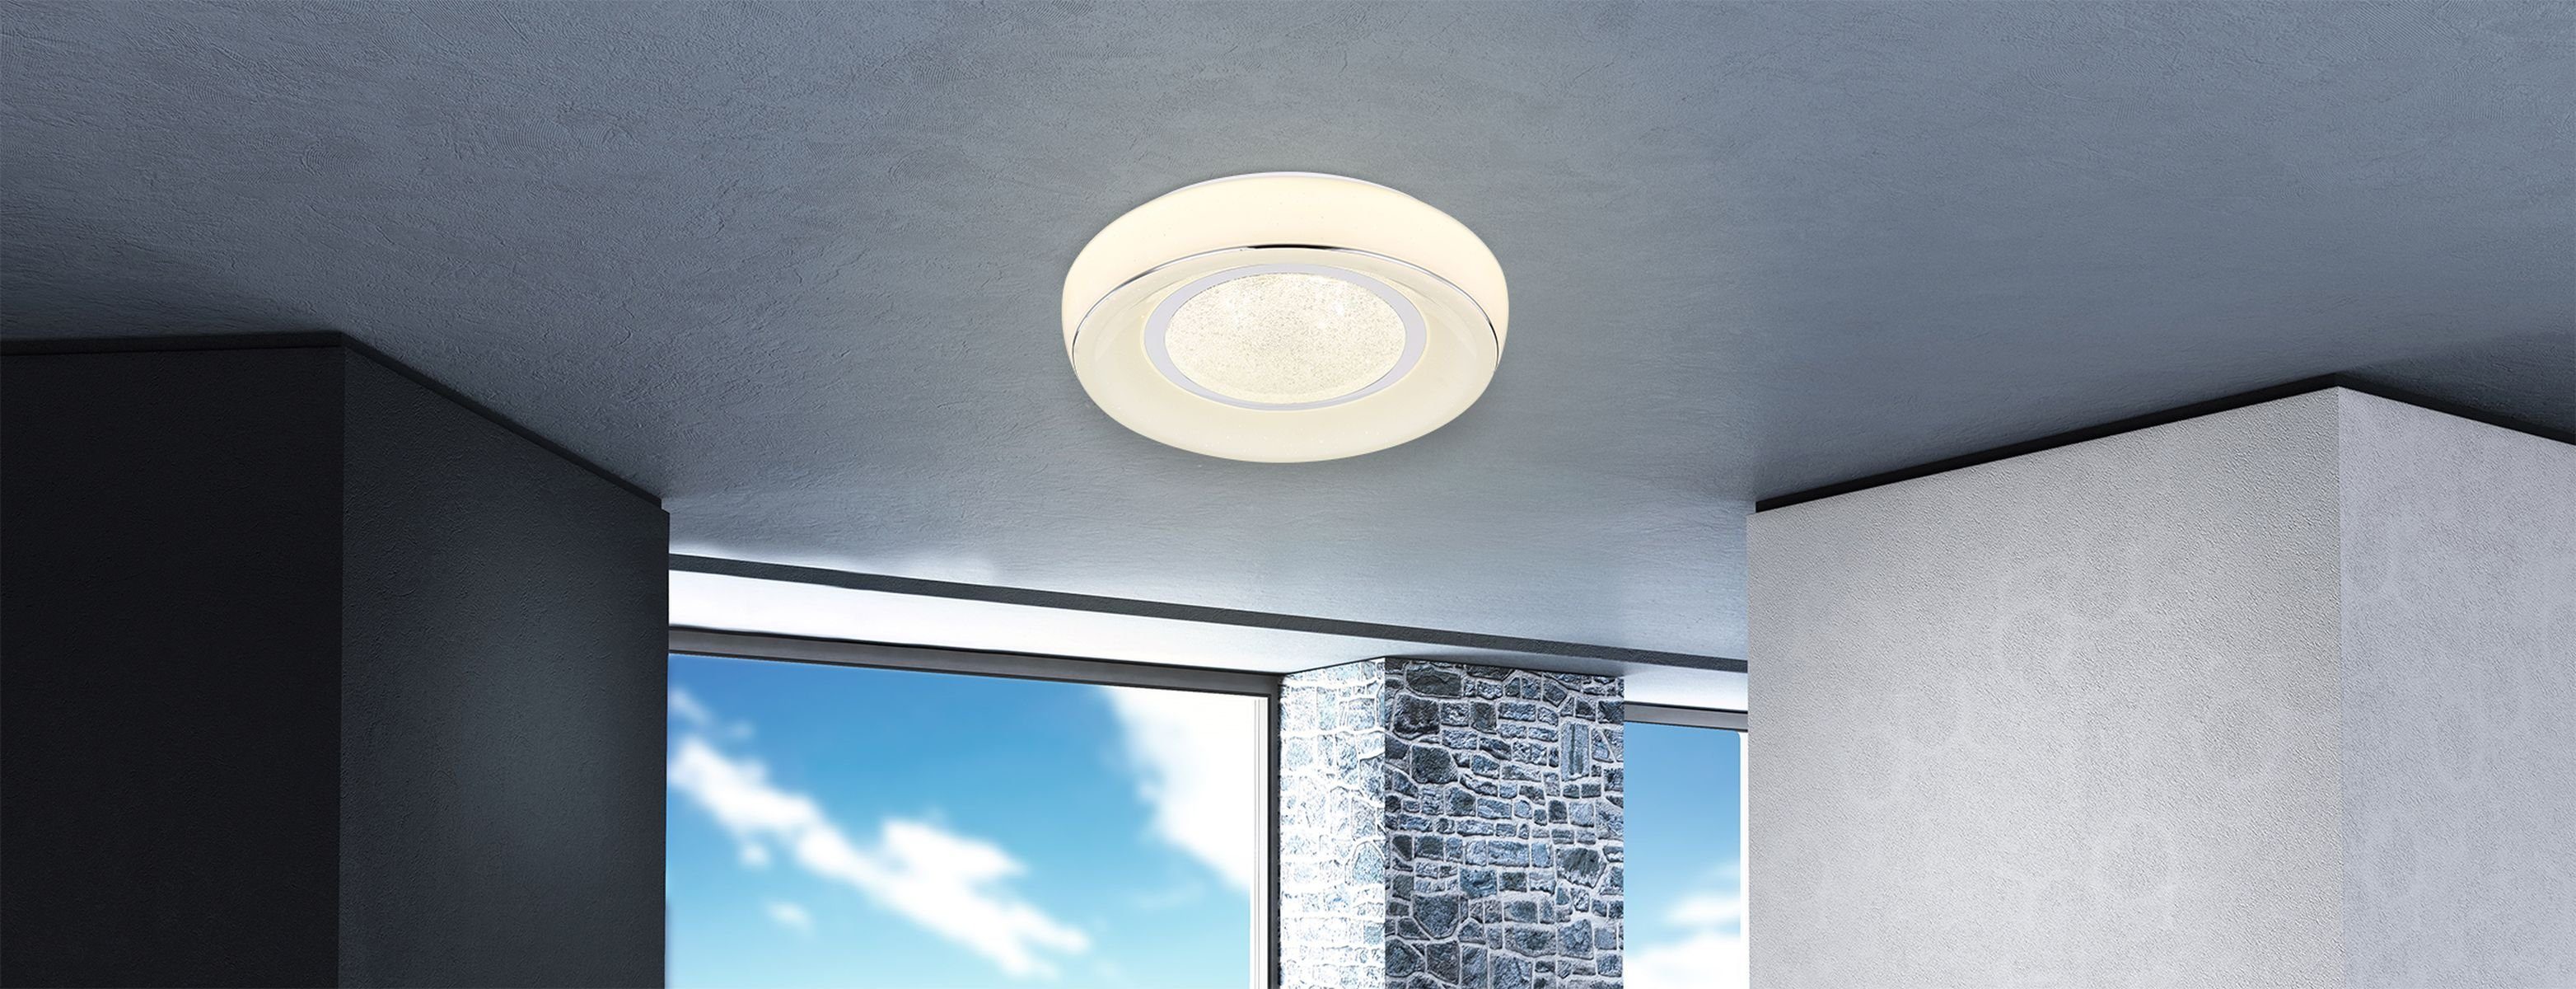 Deckenleuchte LED Fernbedienung dimmbar GLOBO Globo Deckenlampe Deckenleuchte Wohnzimmer